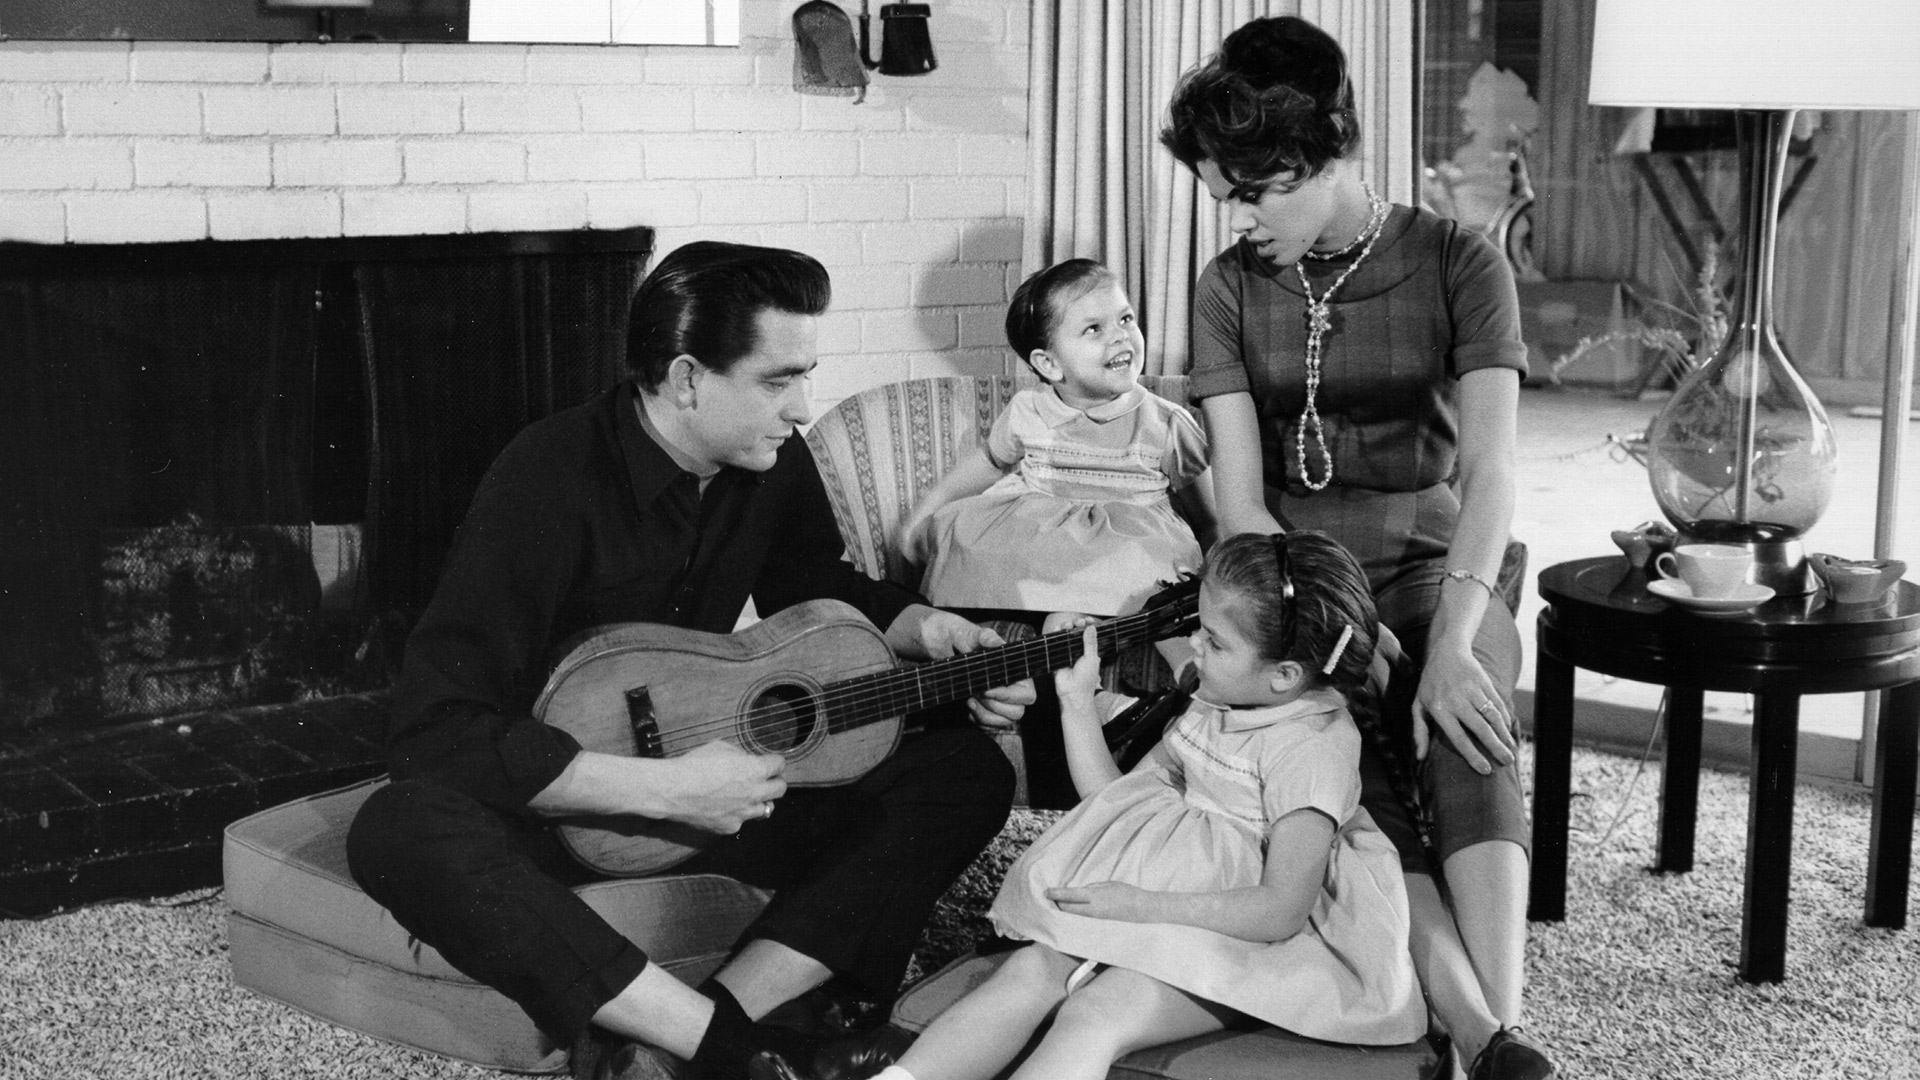 El cantante y compositor de música country Johnny Cash con una guitarra mientras su primera esposa, Vivian Liberto, y sus hijas, Rosanne y Kathy comparten un momento distendido, en 1957.
(Photo by Michael Ochs Archives/Getty Images)